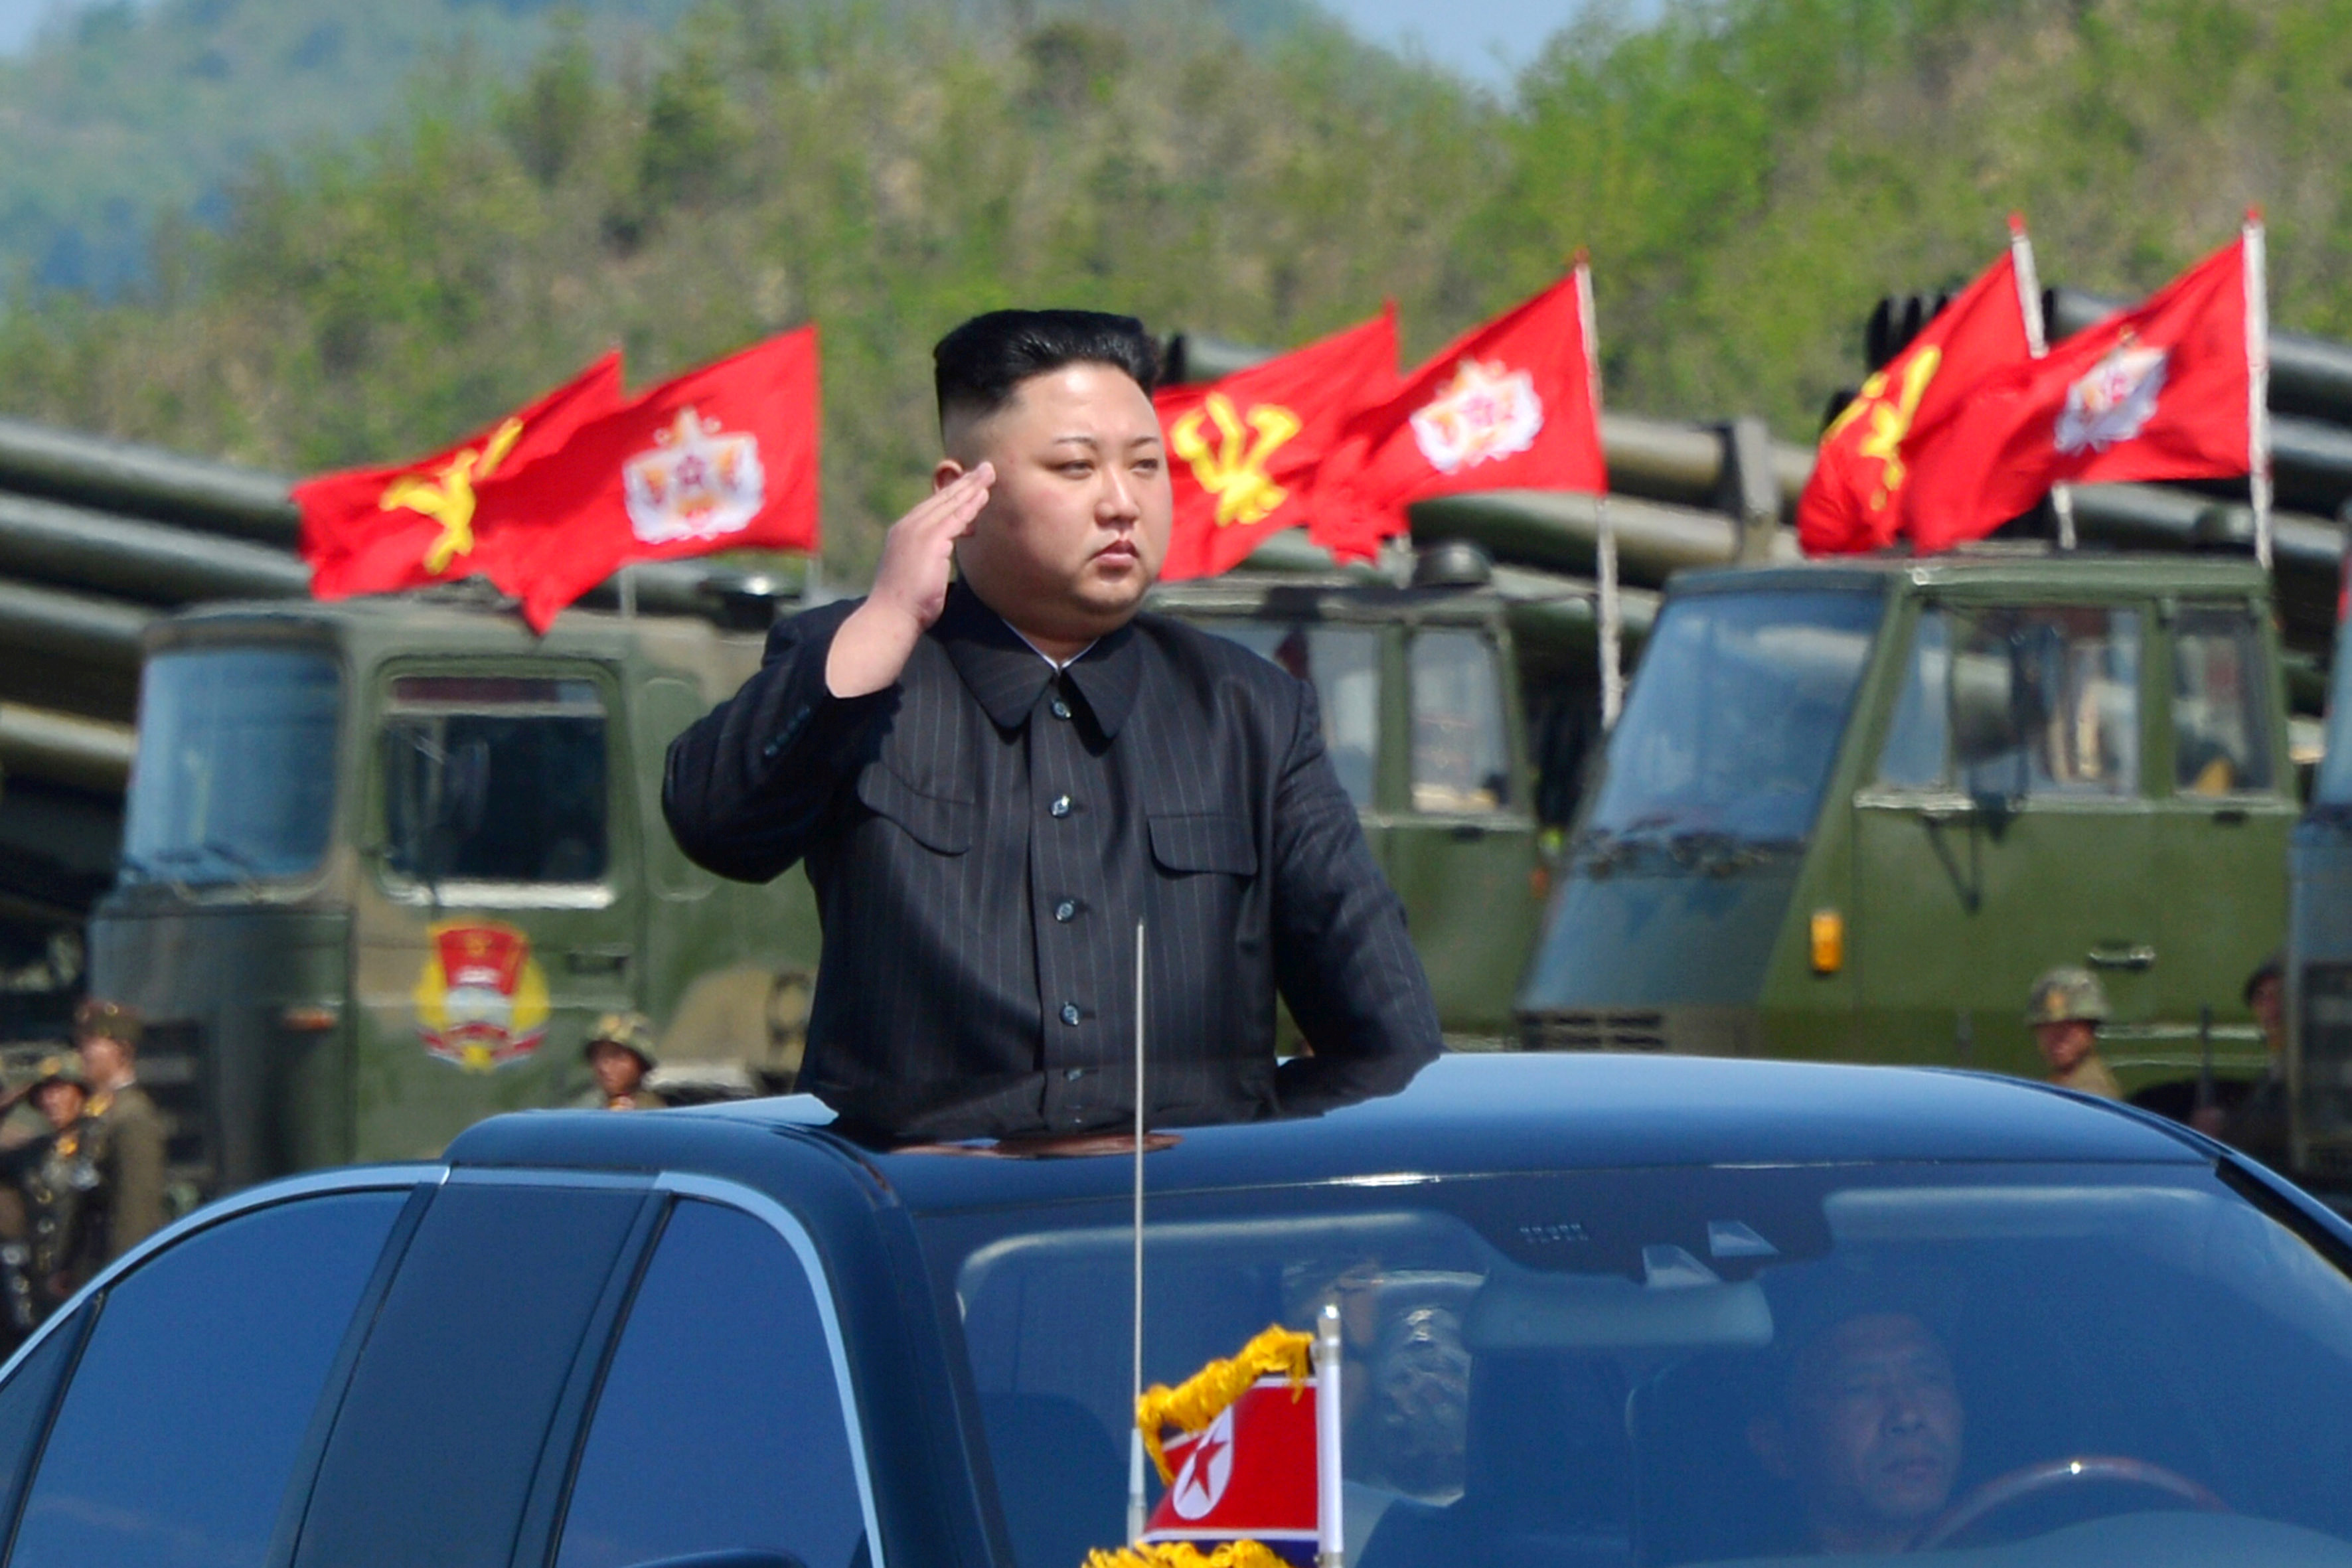 تاريخ ميلاد زعيم كوريا الشمالية لا أحد يعرفه رام الله